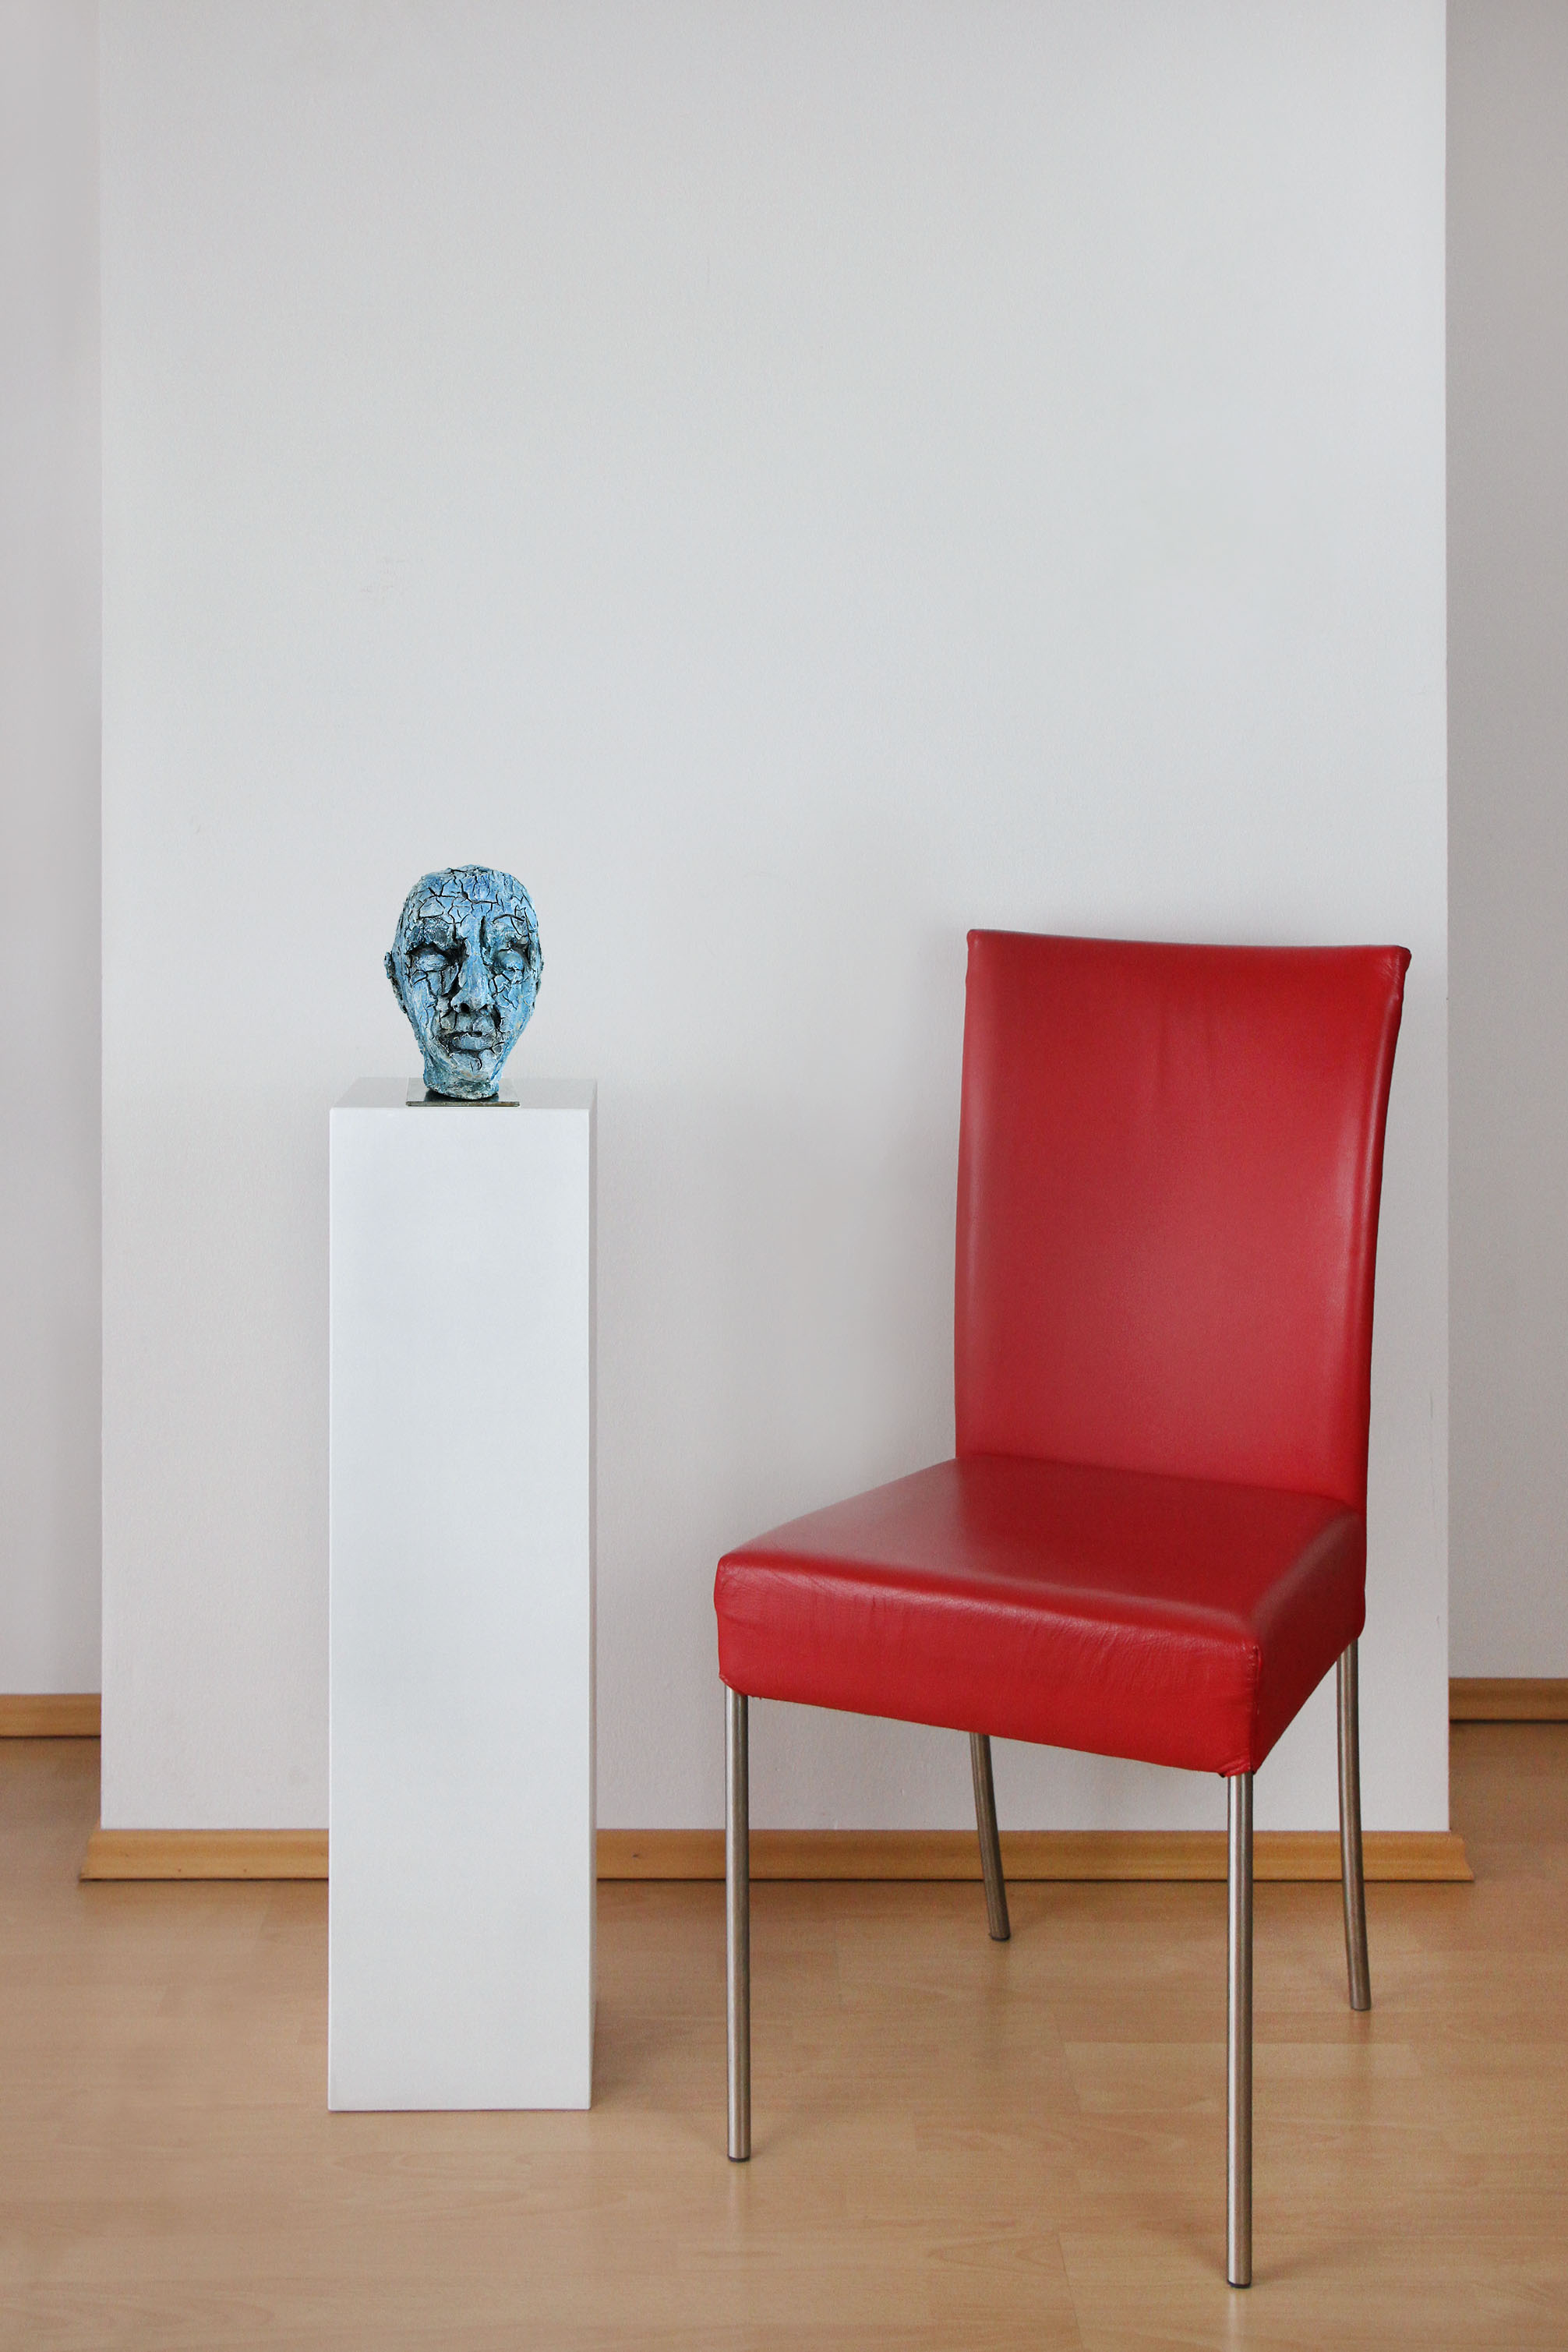 Zeitgenössische Skulptur, Ilona Schmidt: "Blauer Kopf"